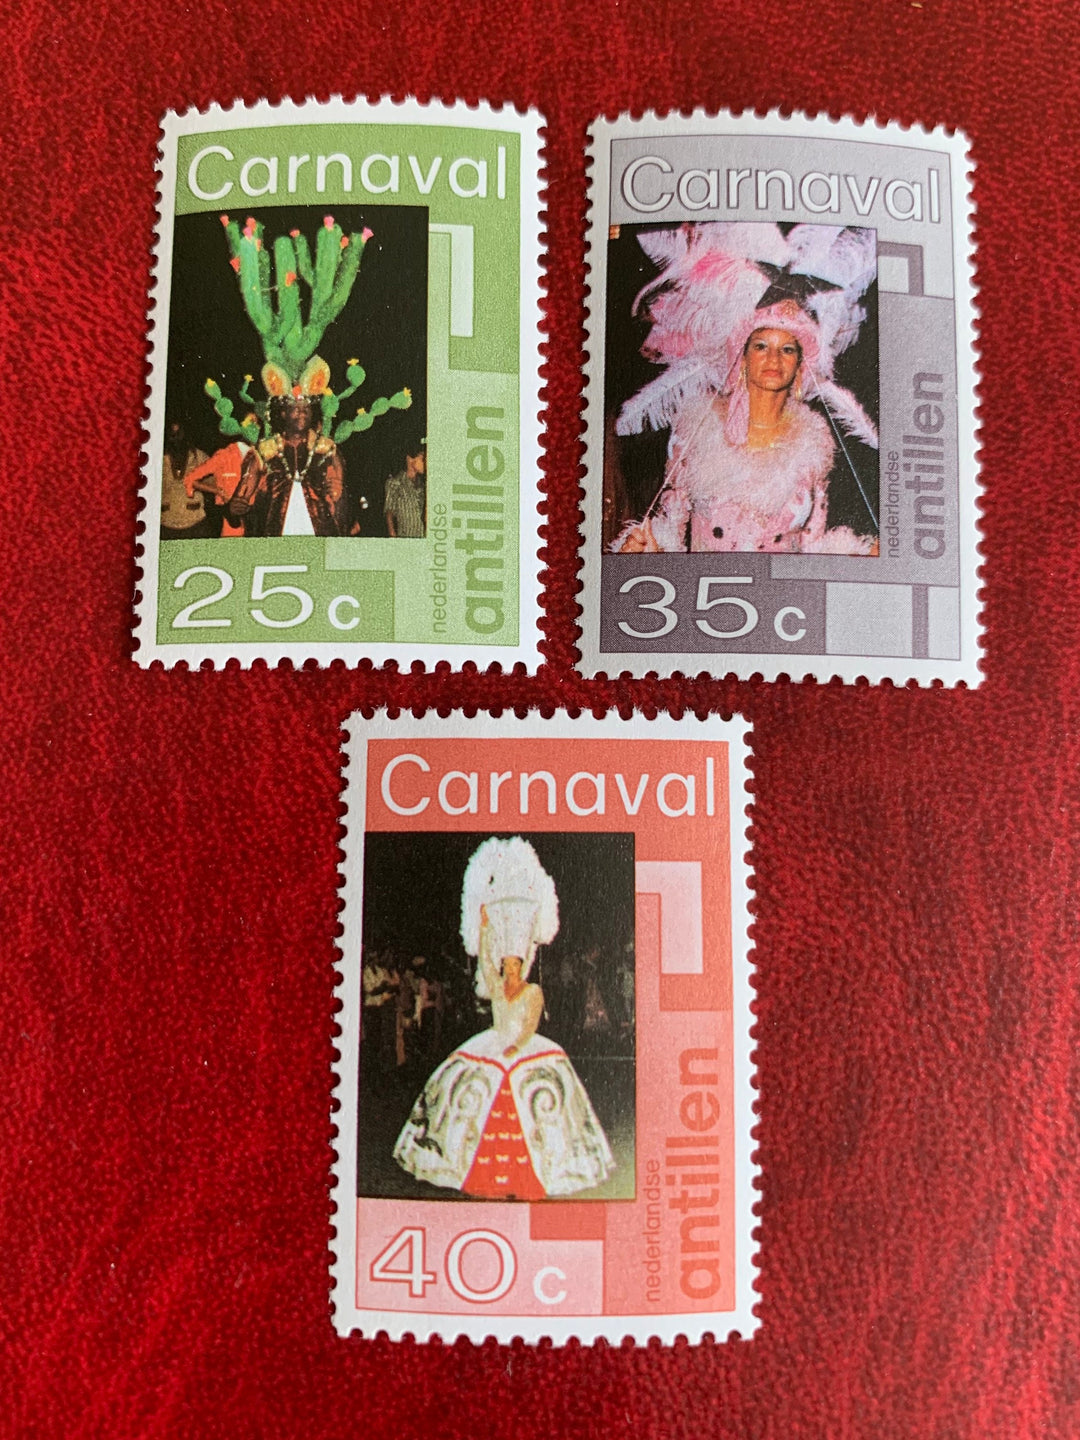 Netherlands Antilles - Original Vintage Postage Stamps- 1977 Carnival